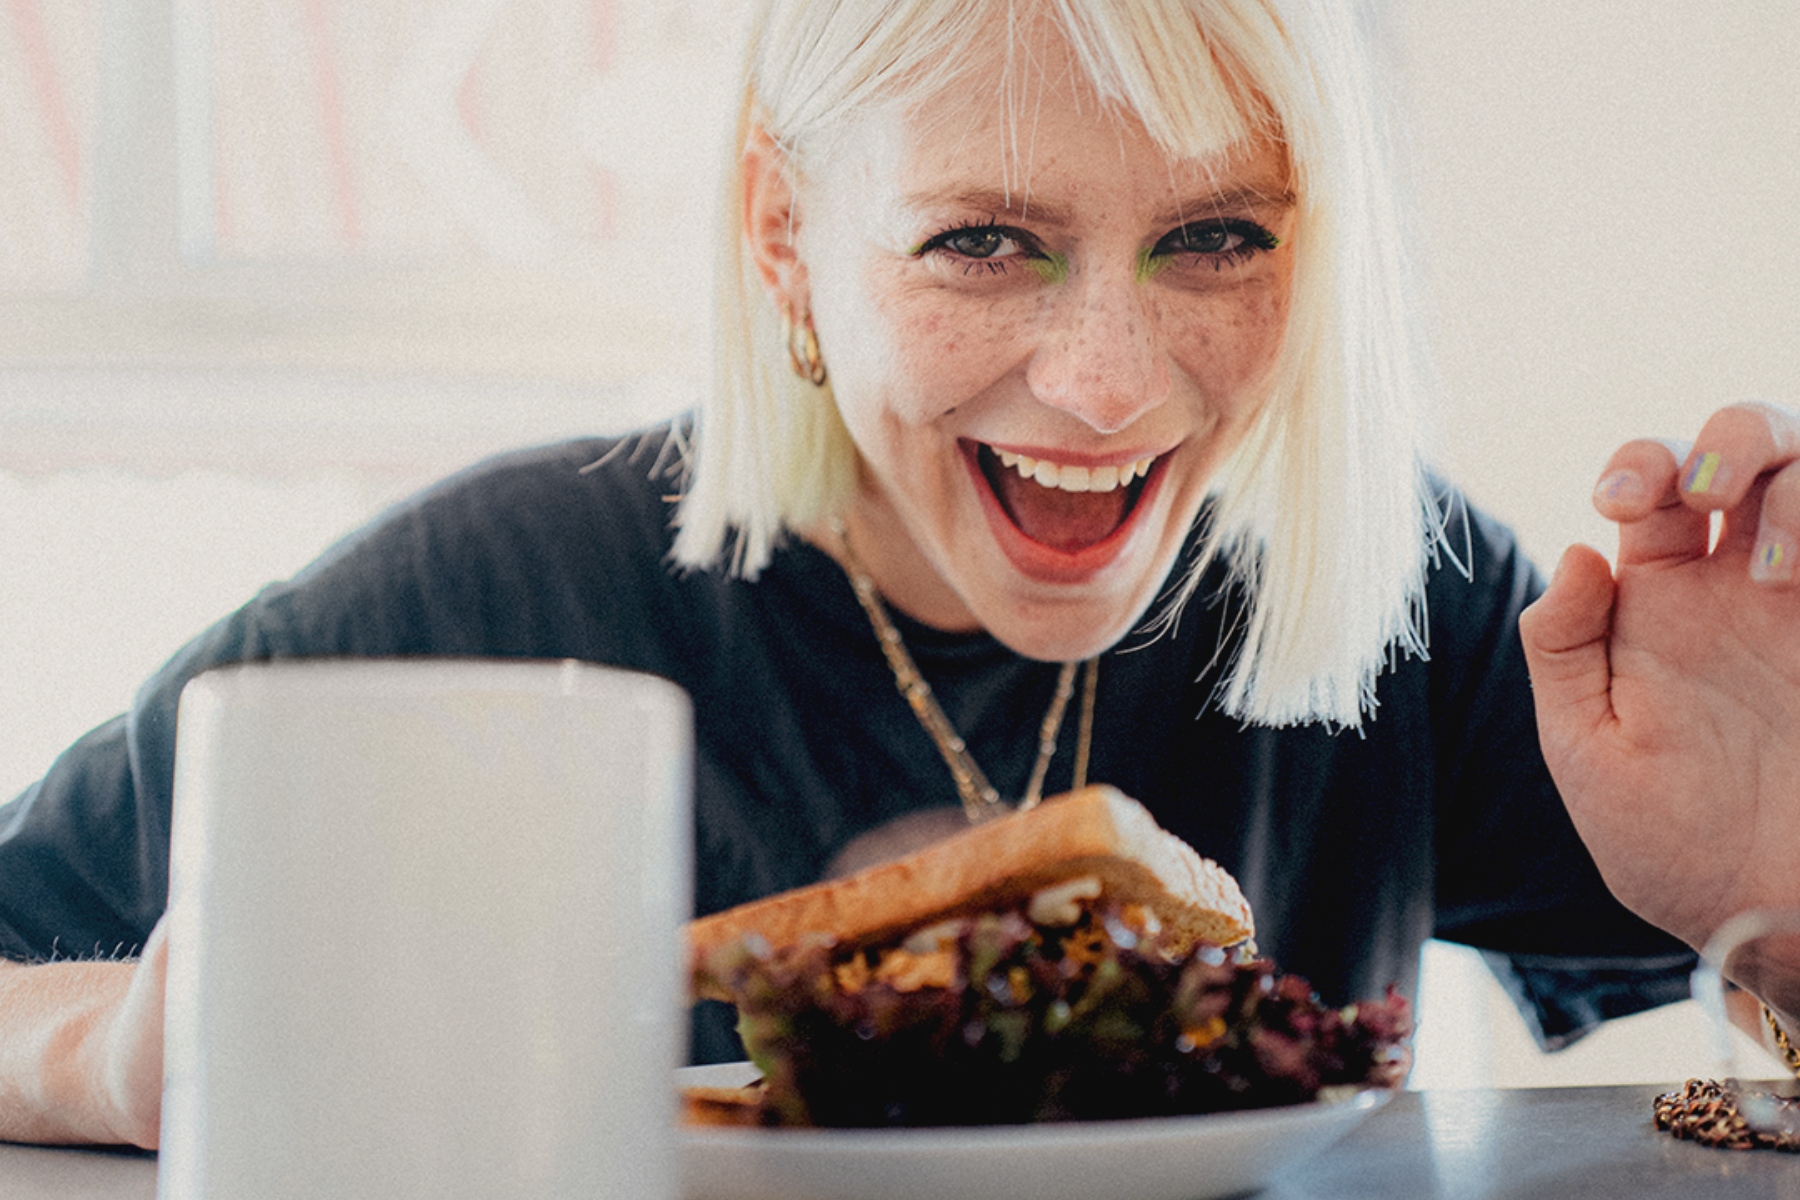 Die Freude über ihr veganes Frühstück steht Alli ins Gesicht geschrieben. – ©MOIA